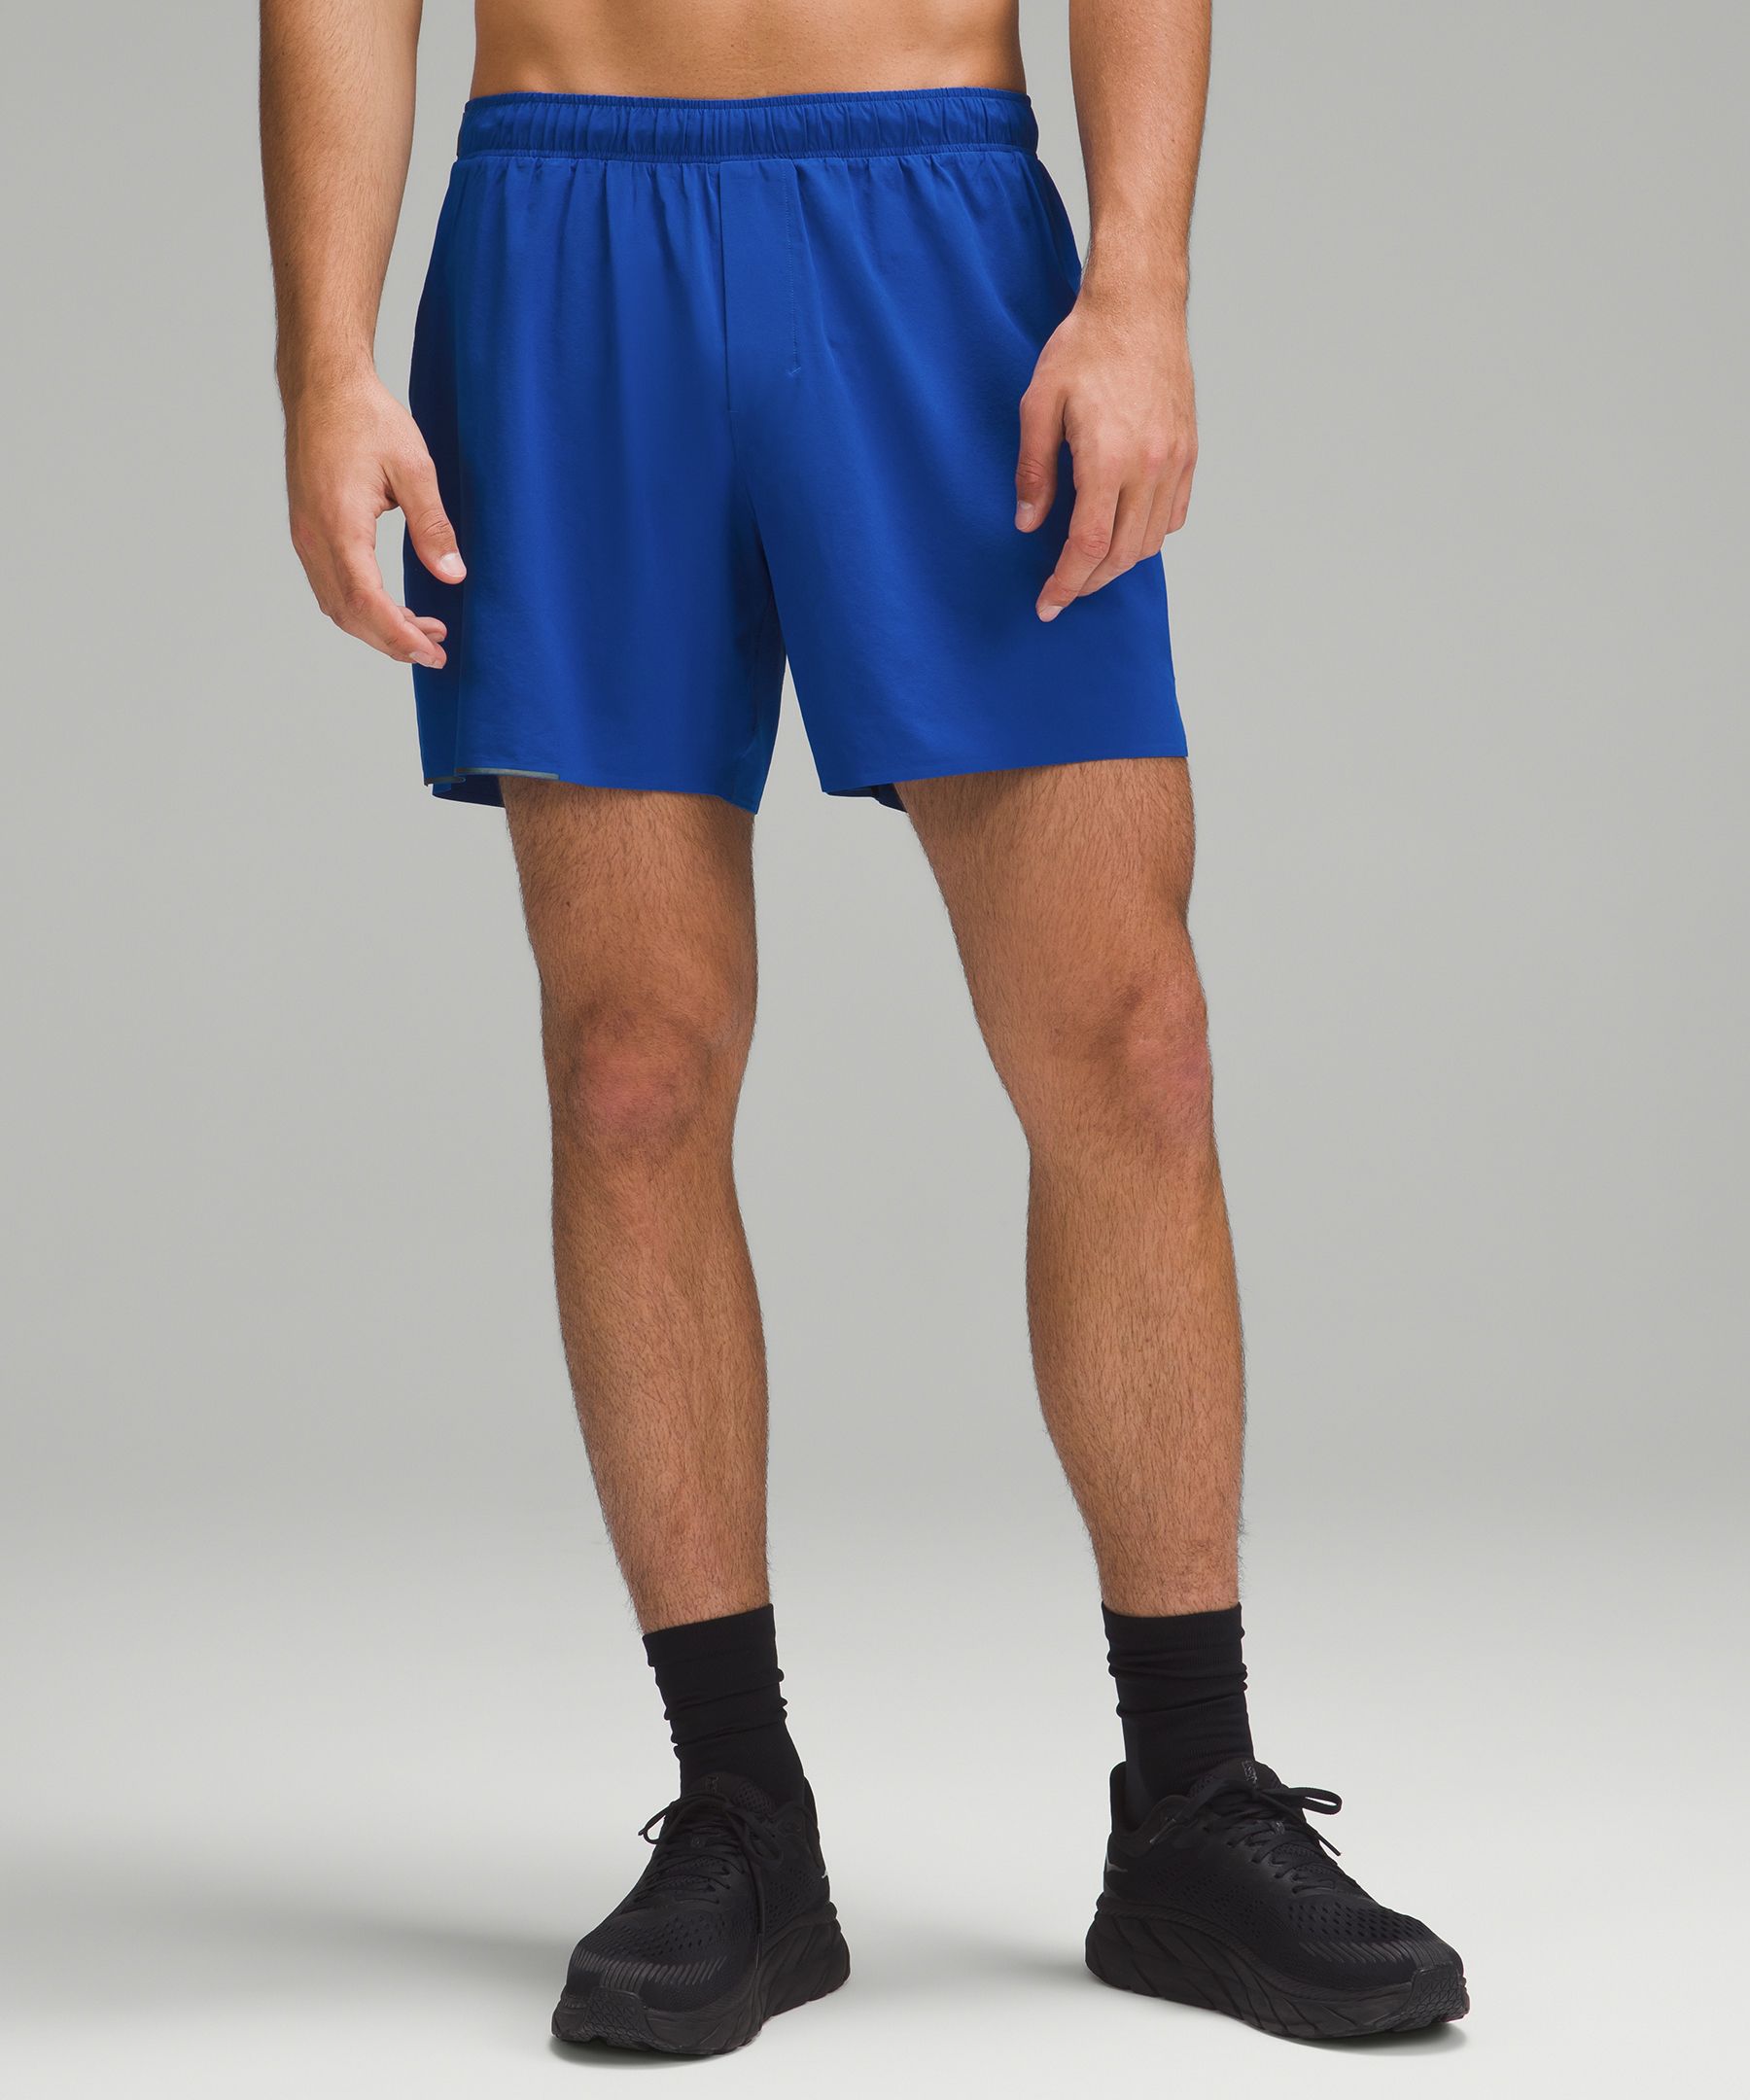 Men's Liner Shorts